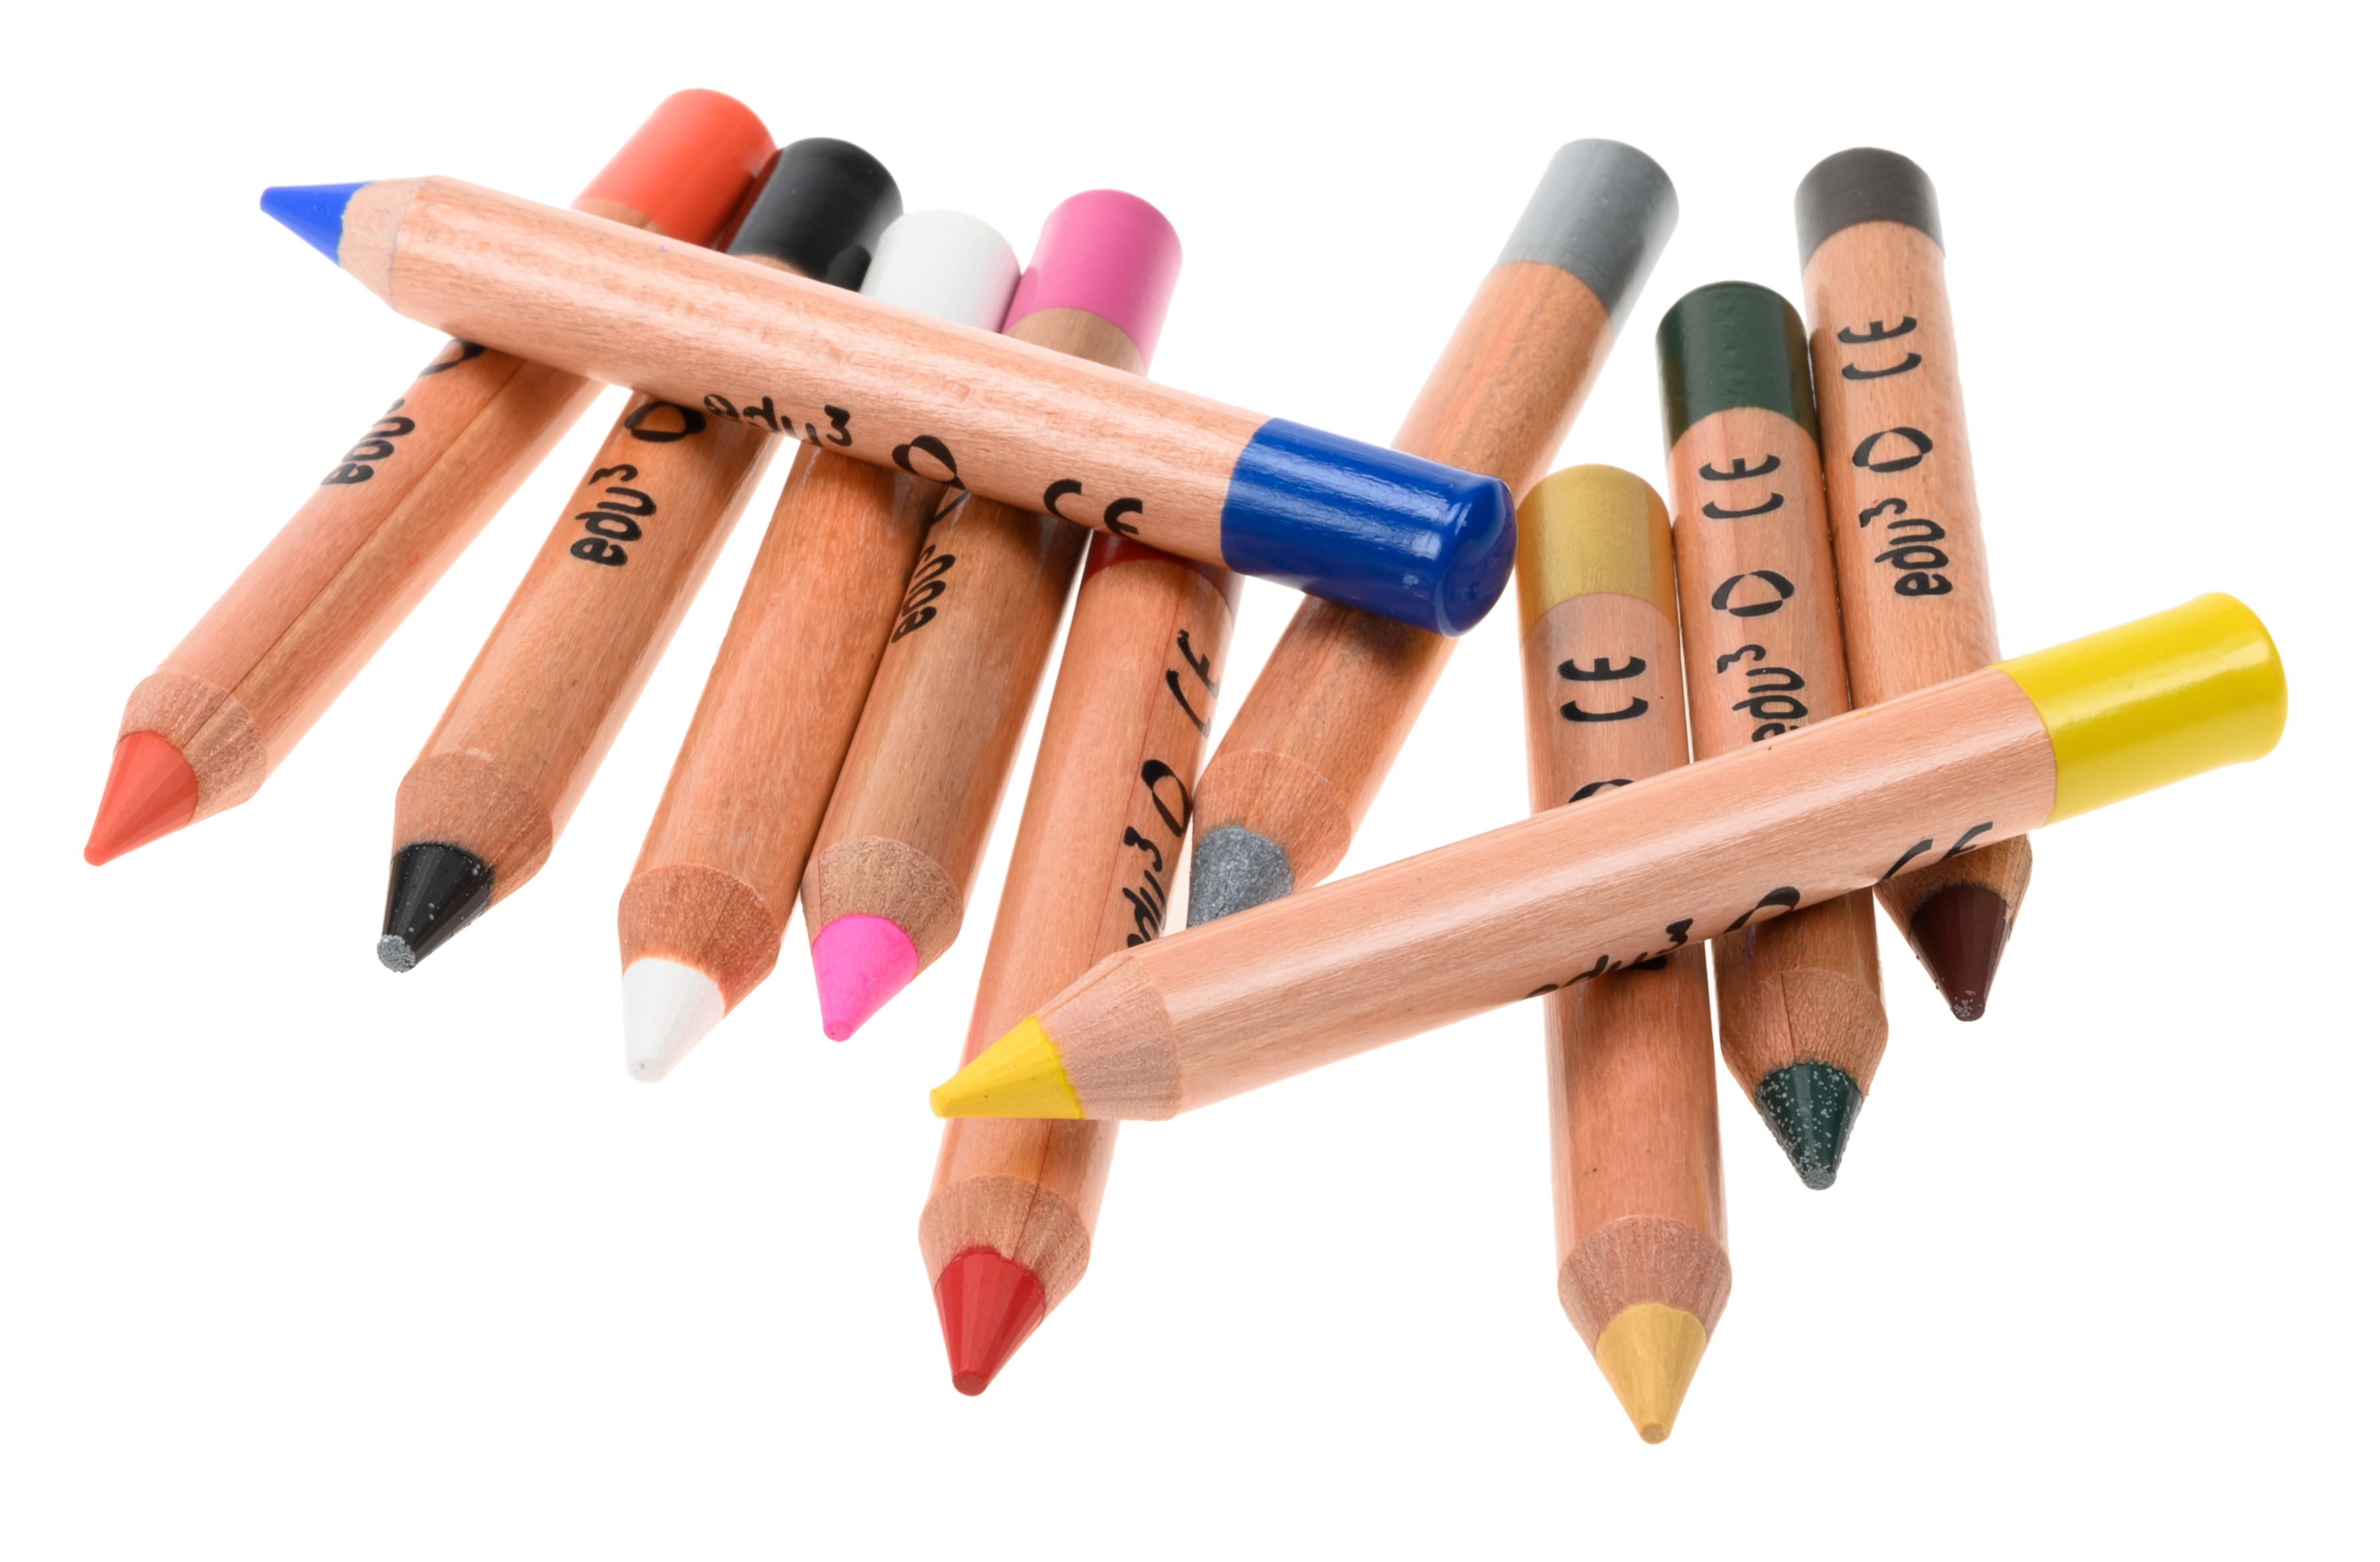 edu³ face paint pencils plastic tube 